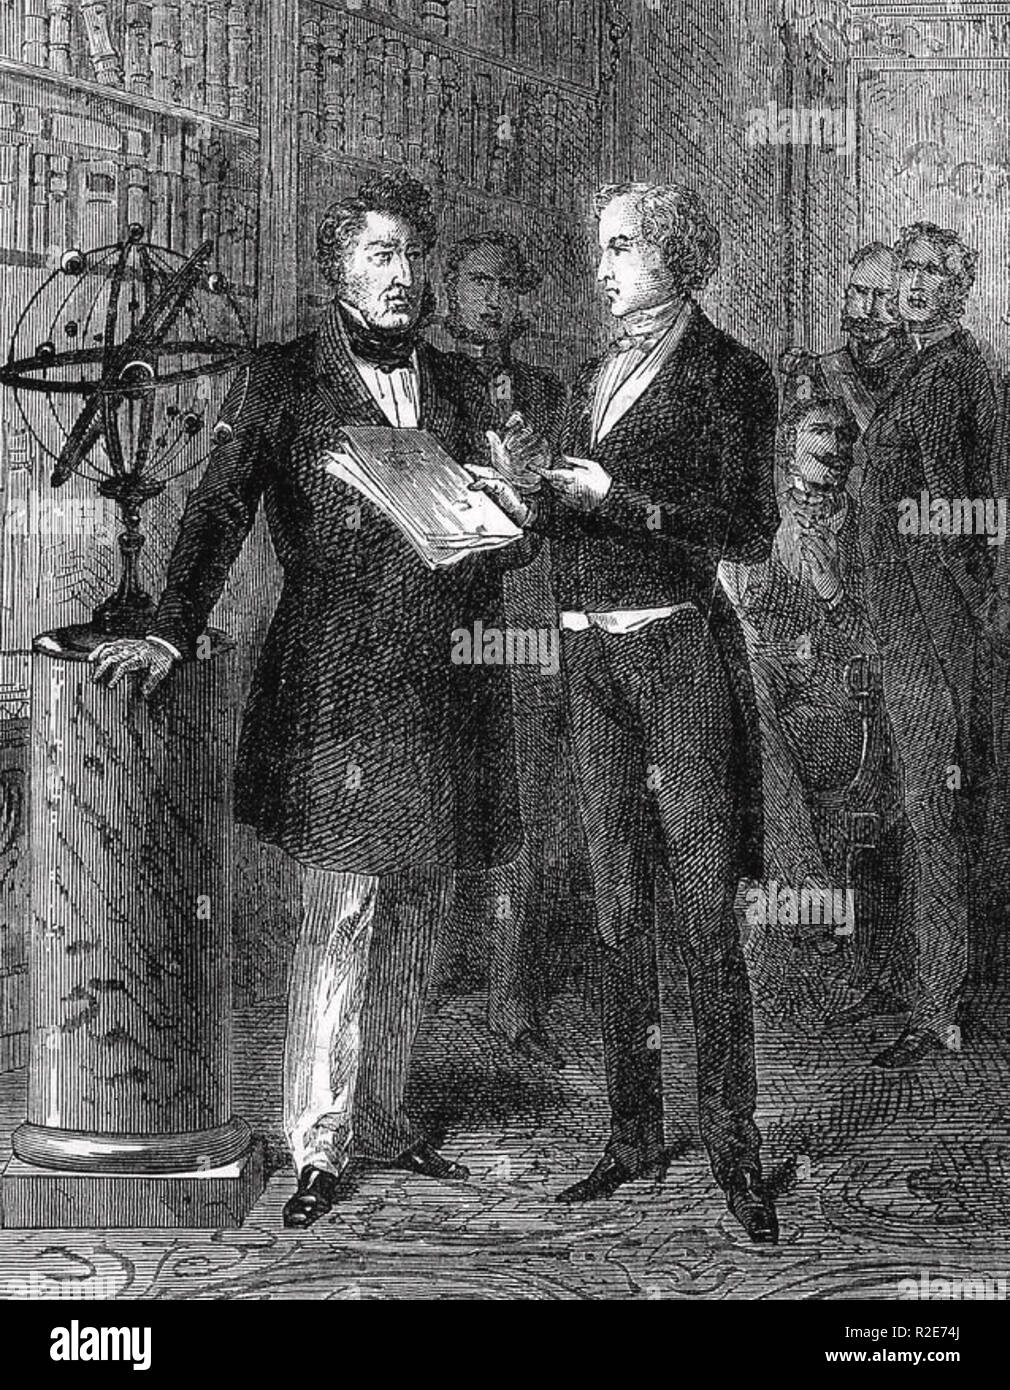 URBAIN Le Verrier (1811-1877) Französischer Mathematiker erklärt seine Entdeckung des Neptun mit den französischen König Louis Philippe, 1846 Stockfoto